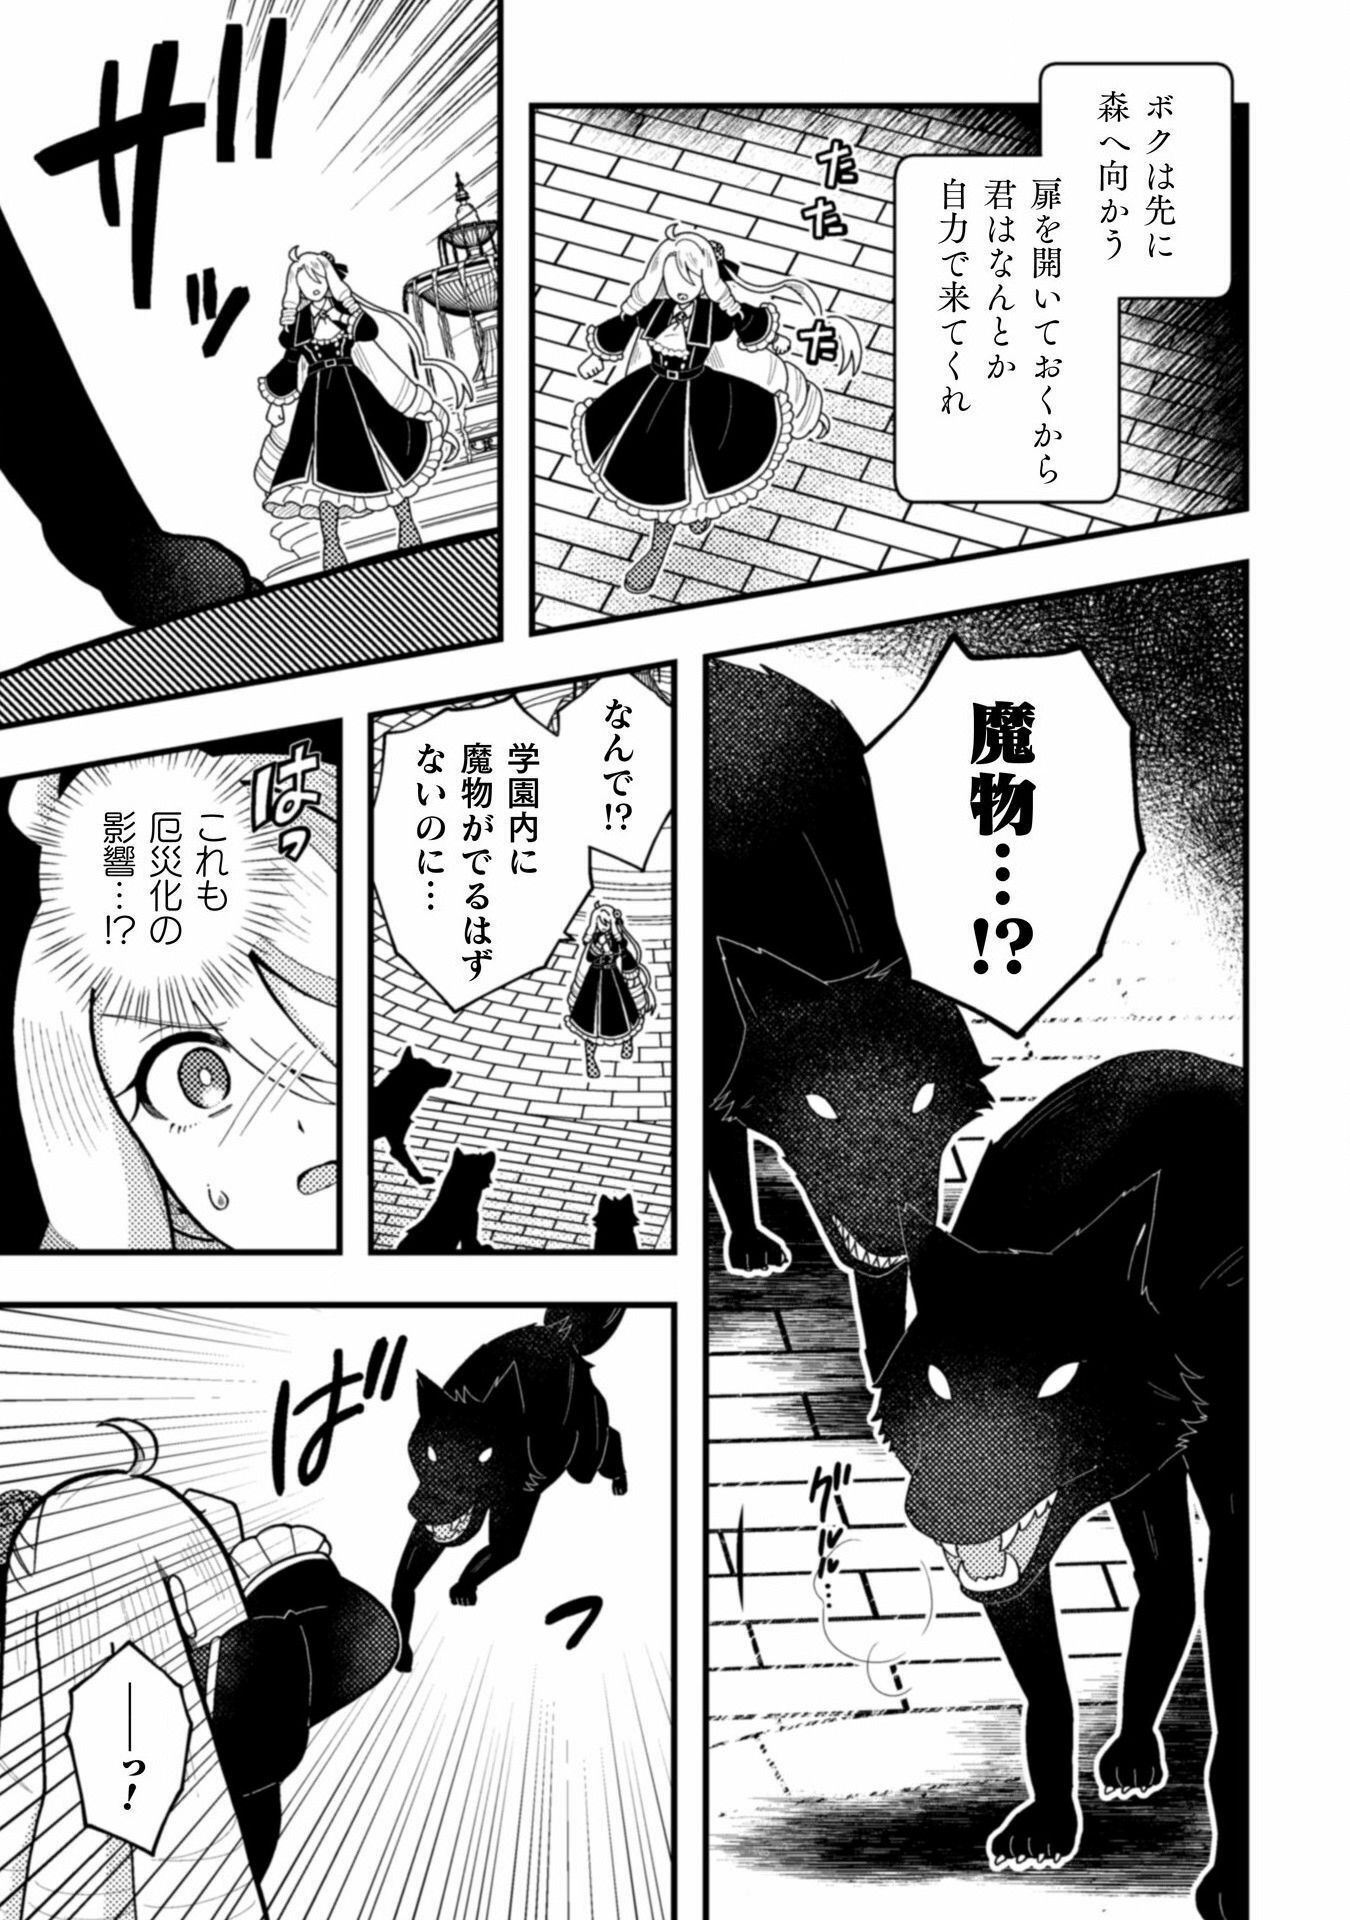 Otome Game no Akuyaku Reijou ni Tensei shitakedo Follower ga Fukyoushiteta Chisiki shikanai - Chapter 22 - Page 11